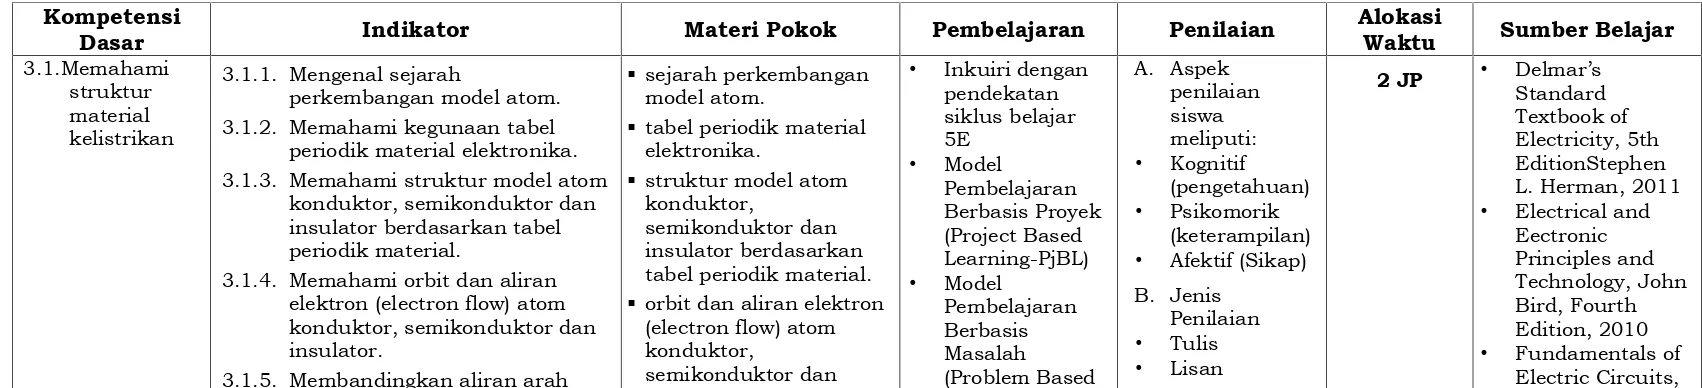 tabel periodik material.